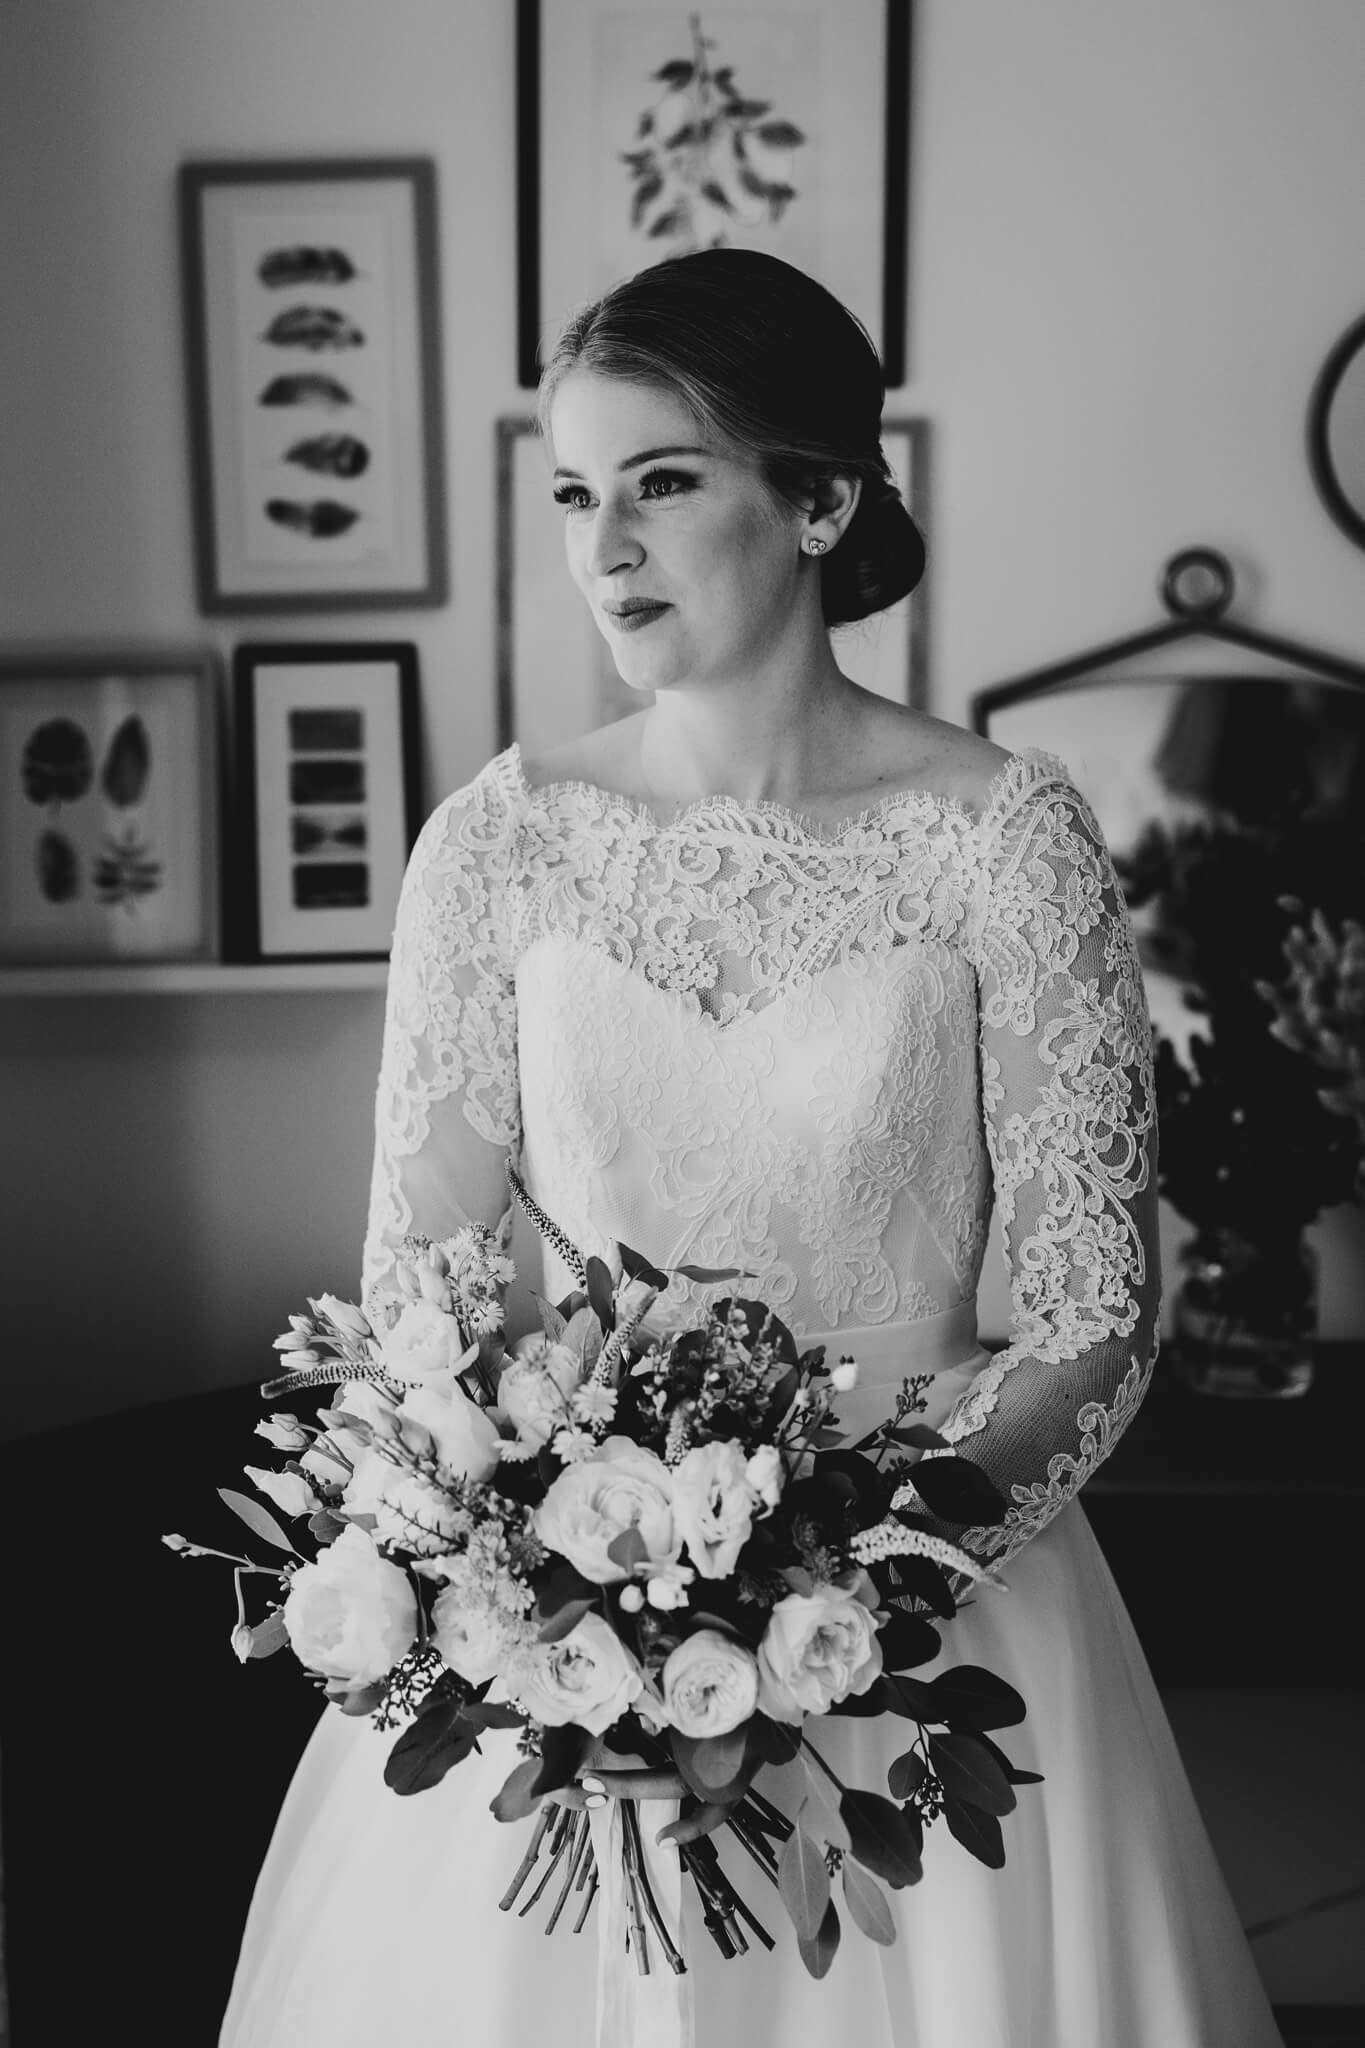 Beth-Shean-Wedding-bride-bouquet-3.jpg